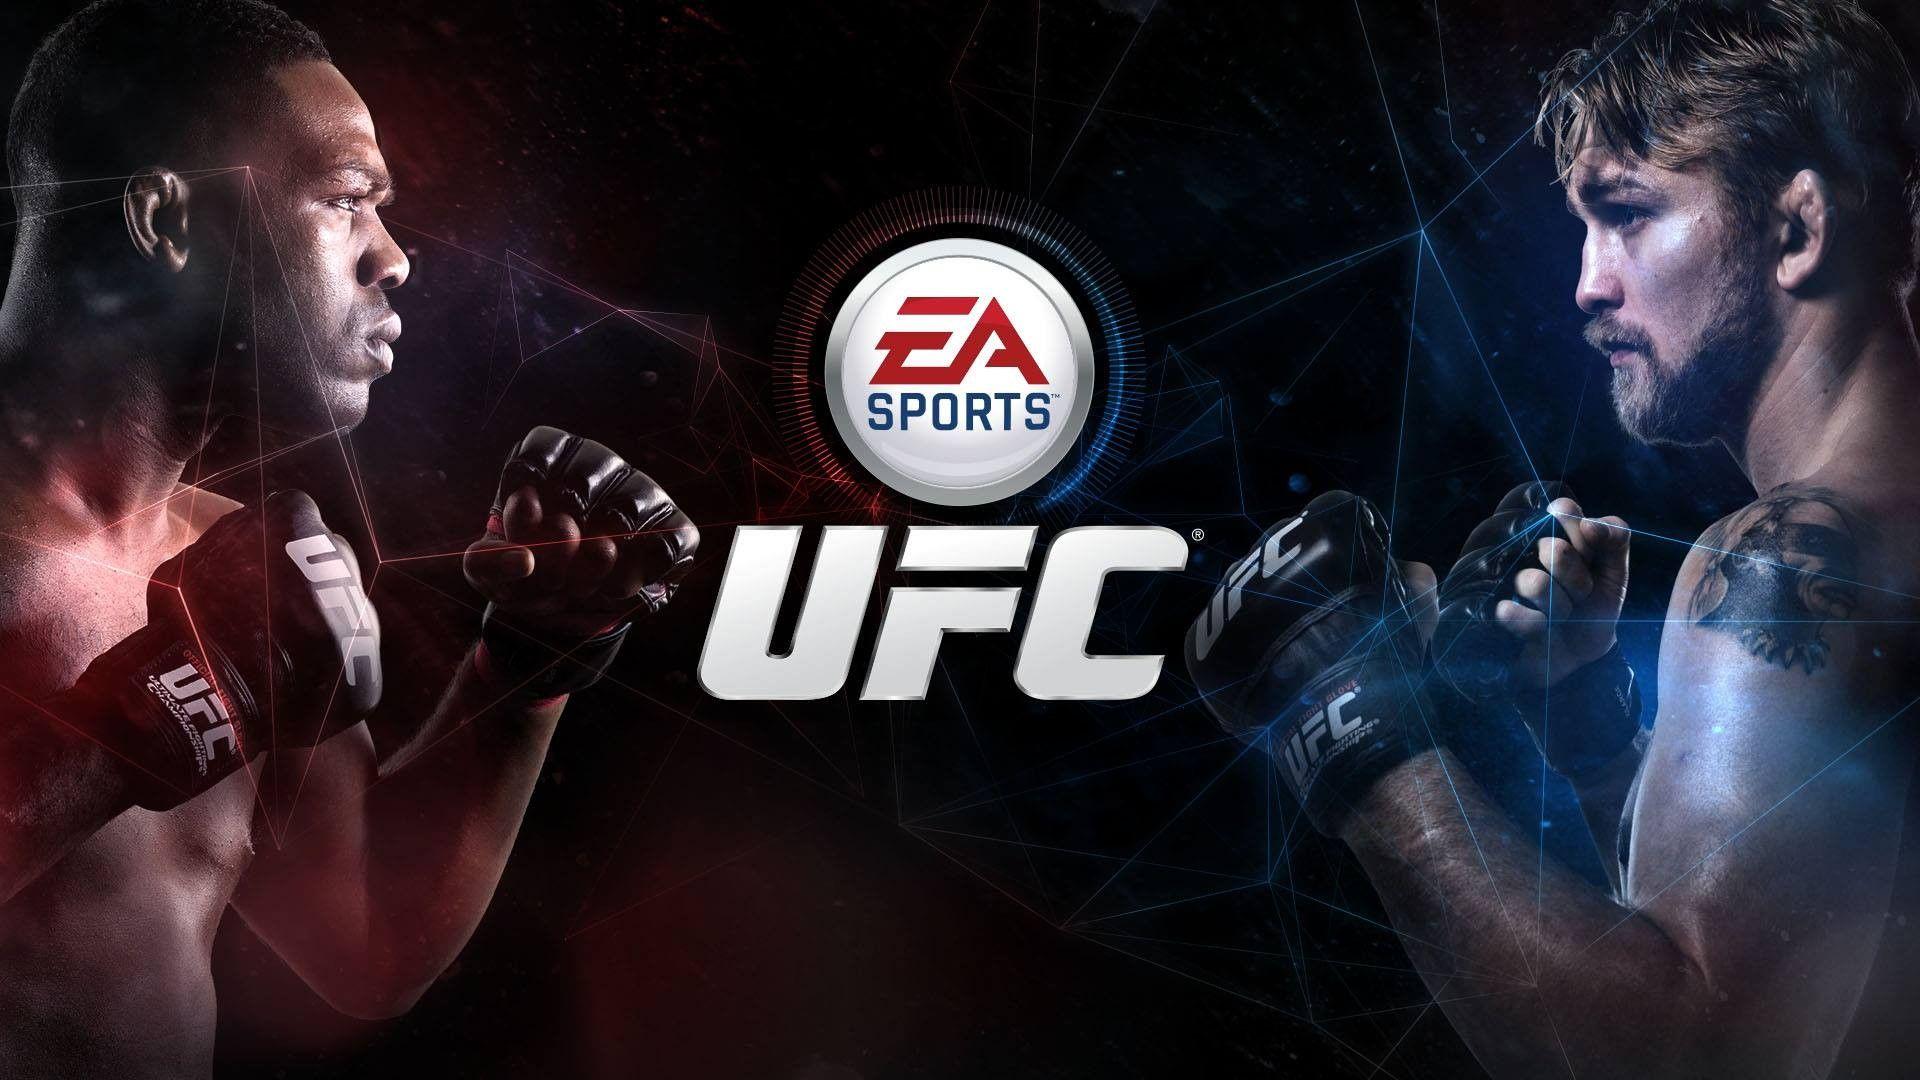 EA Sports UFC, UFC, Jon Jones, Alexander Gustafsson Wallpaper HD / Desktop and Mobile Background